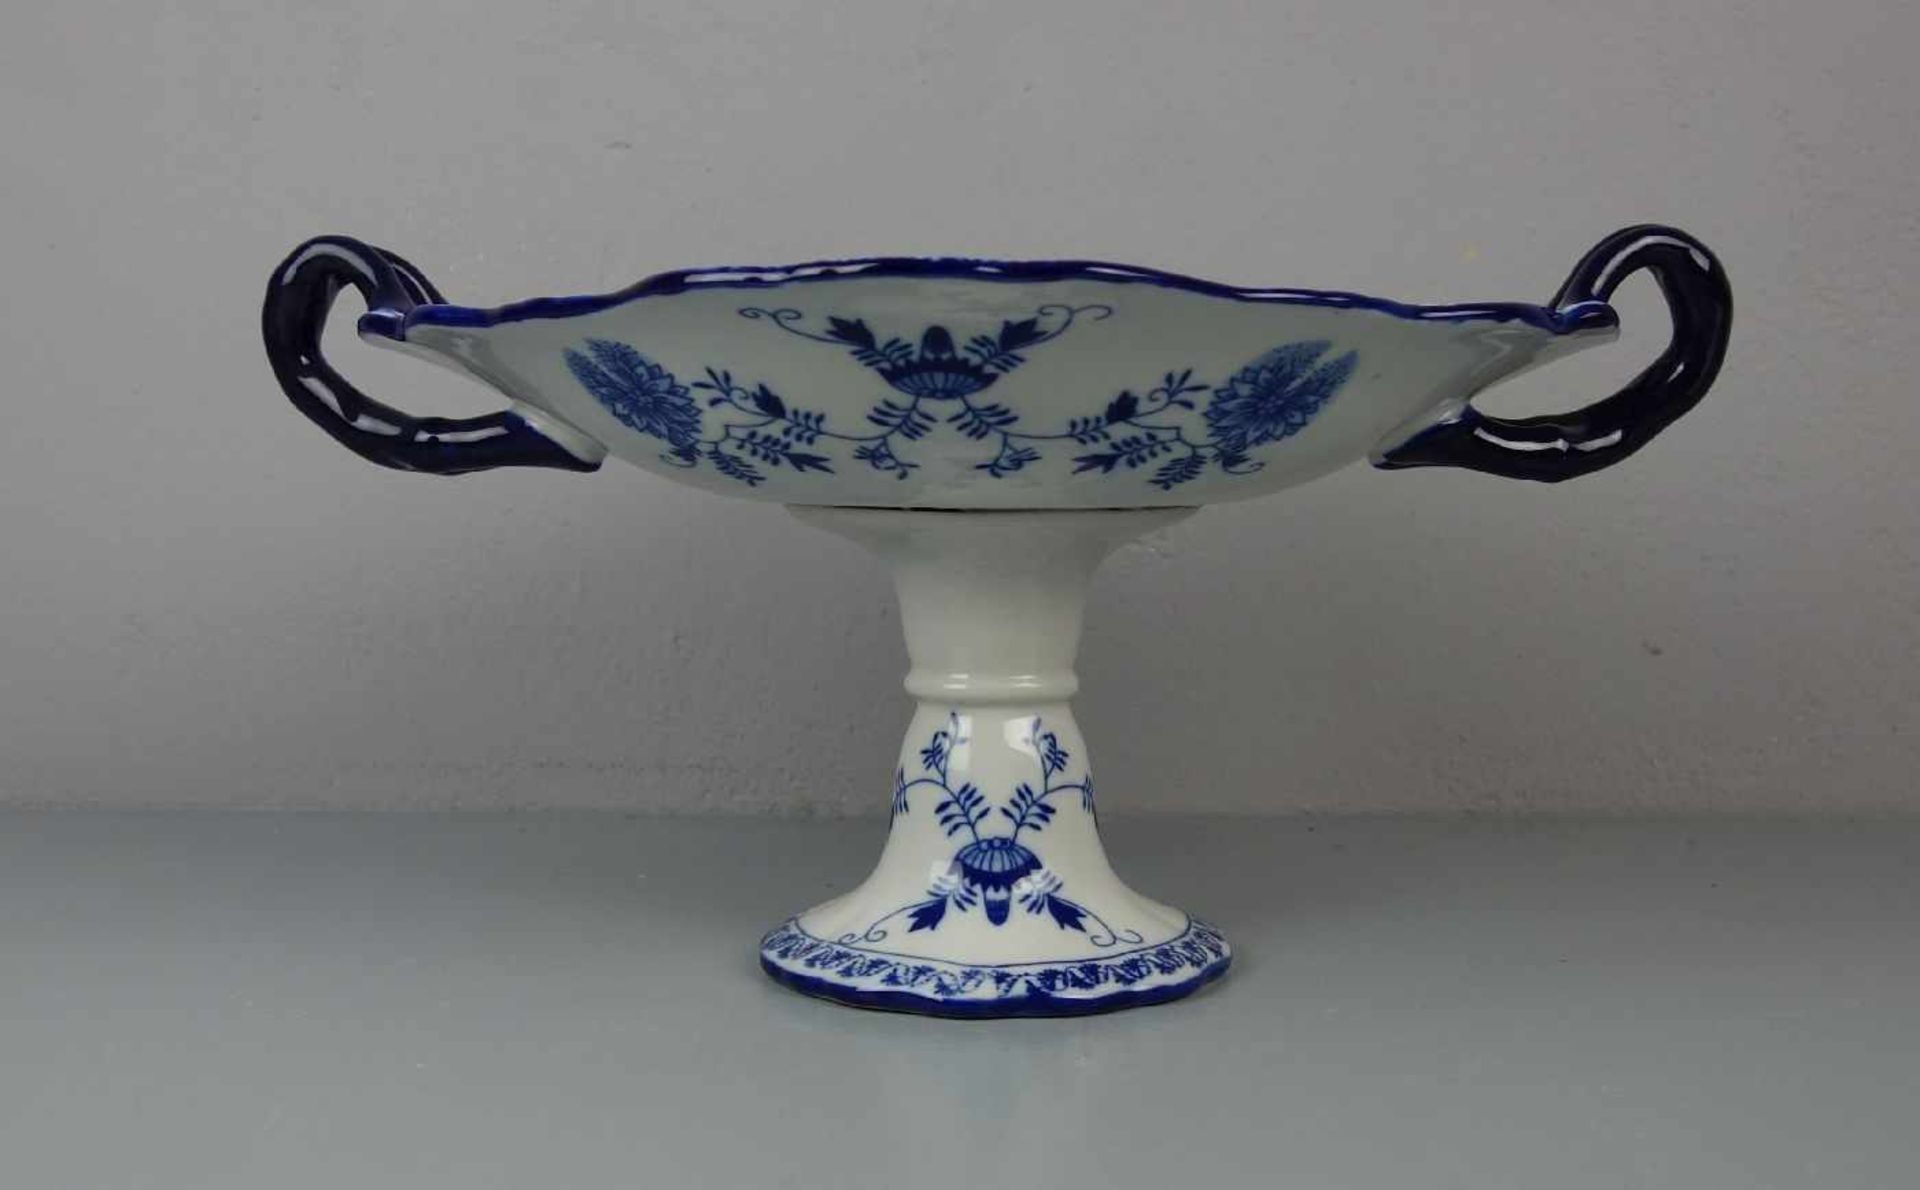 SCHALE / FUSSSCHALE / bowl on a stand, zweiteilig, Porzellan, gemarkt in Anlehnung an die Manufaktur - Image 3 of 6